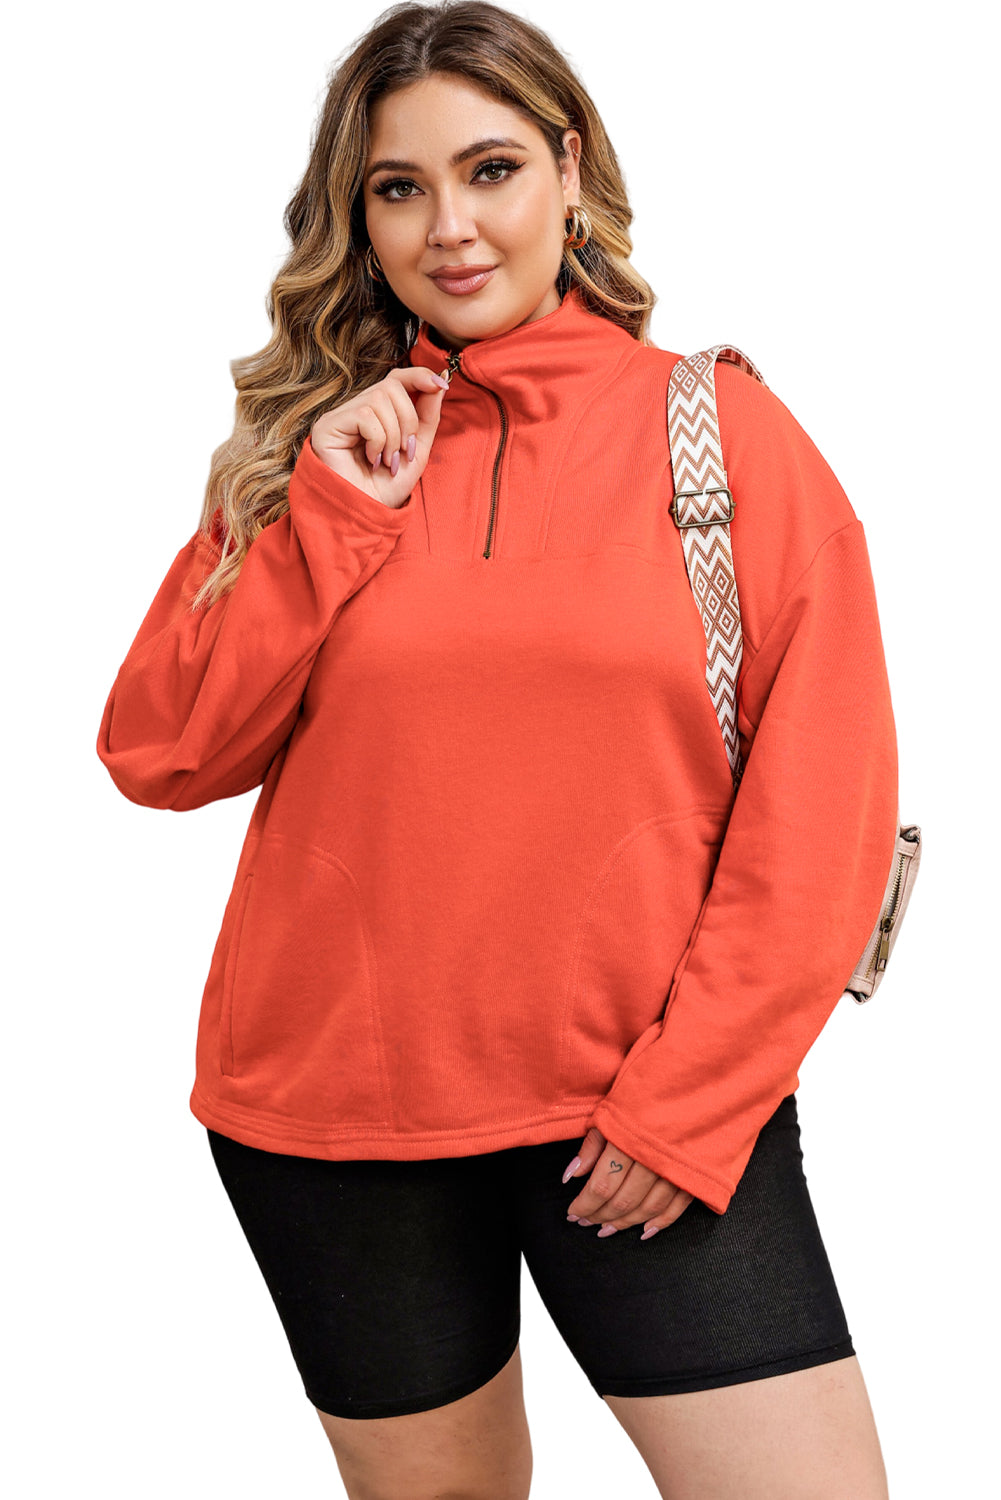 Orangefarbenes Sweatshirt mit O-Ring-Reißverschluss und Taschen in Übergröße